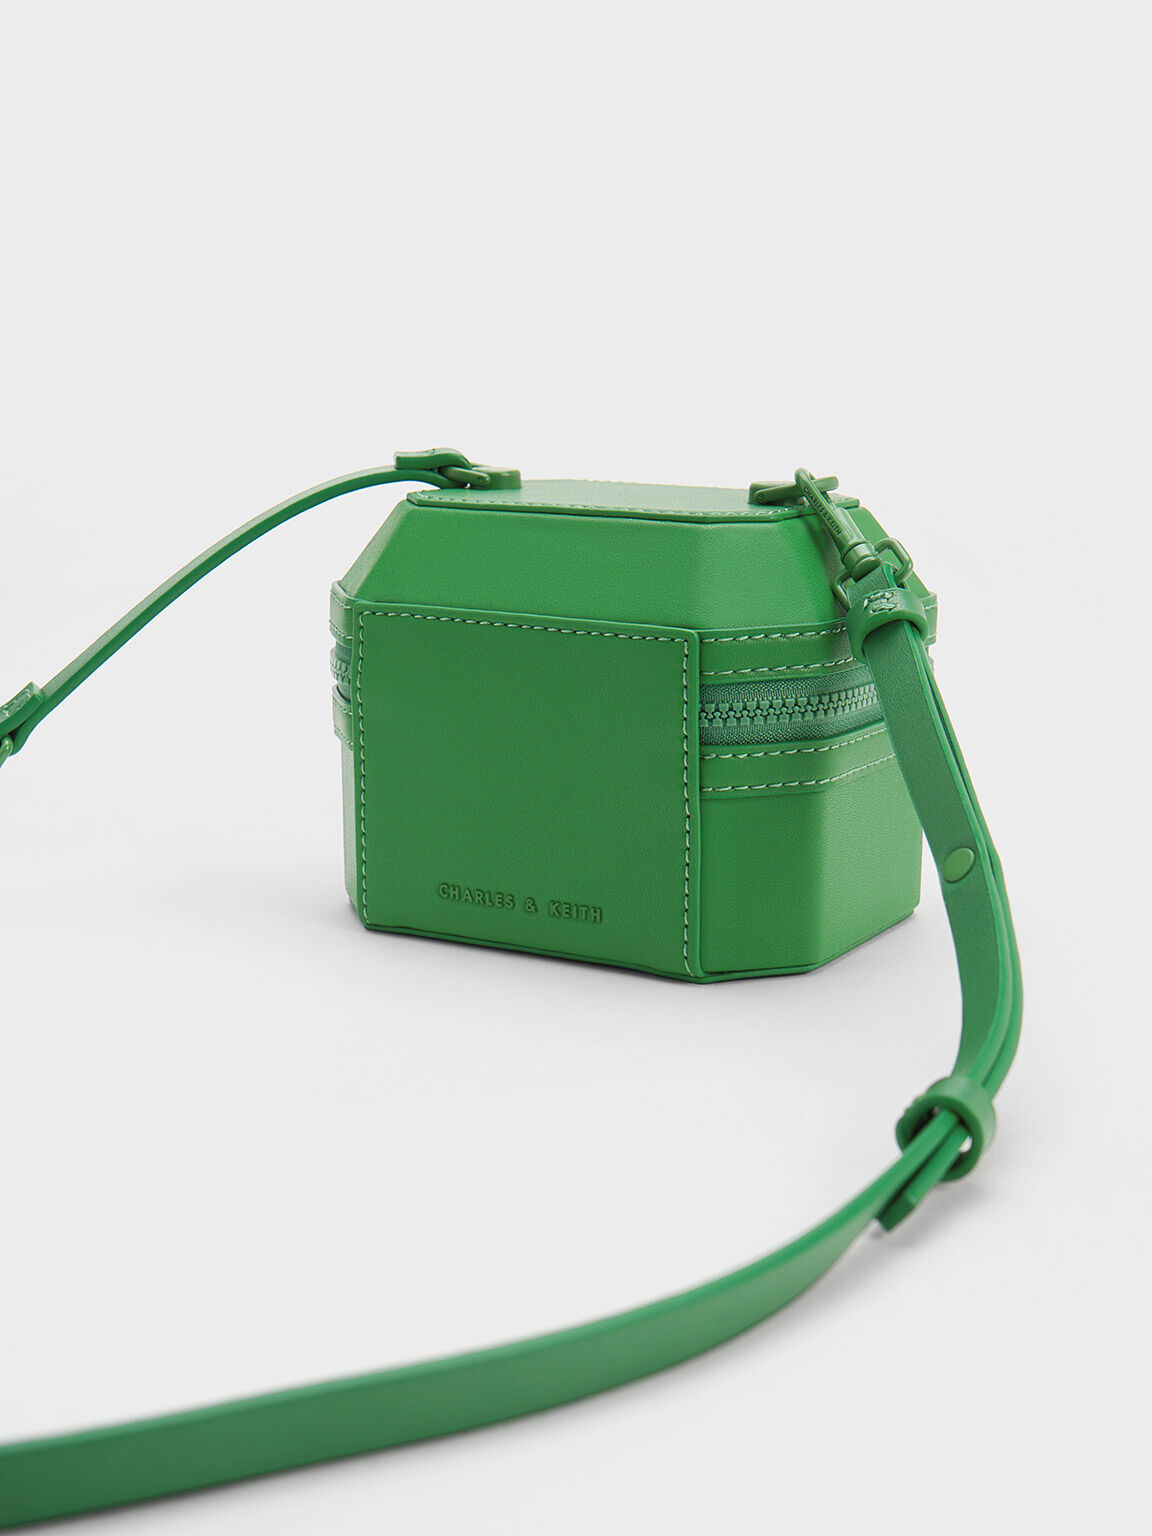 手提拉鍊箱型包, 綠色, hi-res